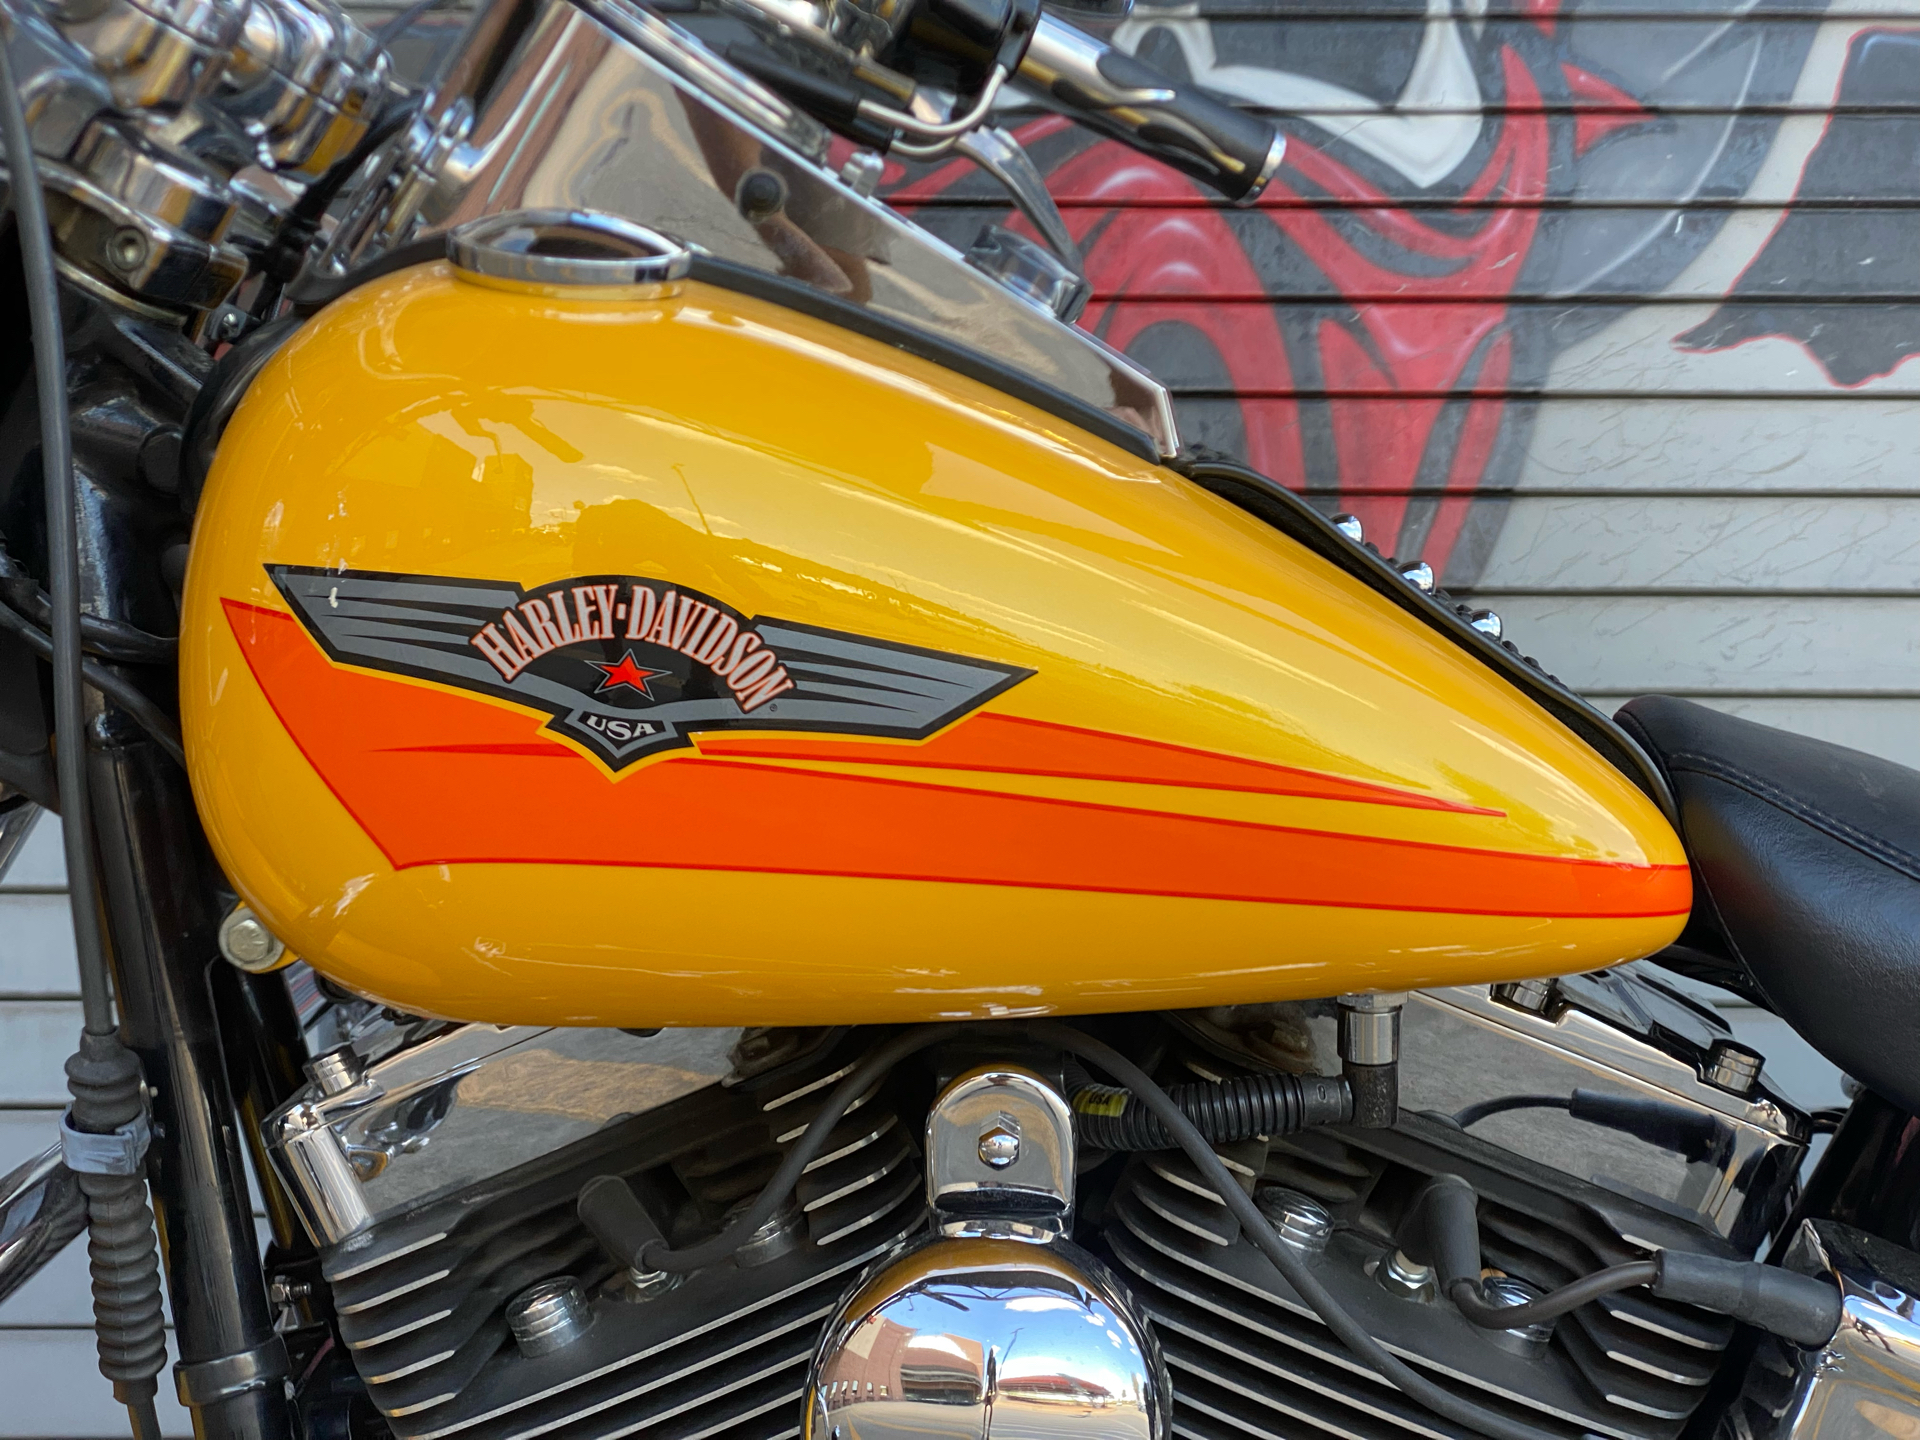 2007 Harley-Davidson FLSTF Softail® Fat Boy® in Carrollton, Texas - Photo 14